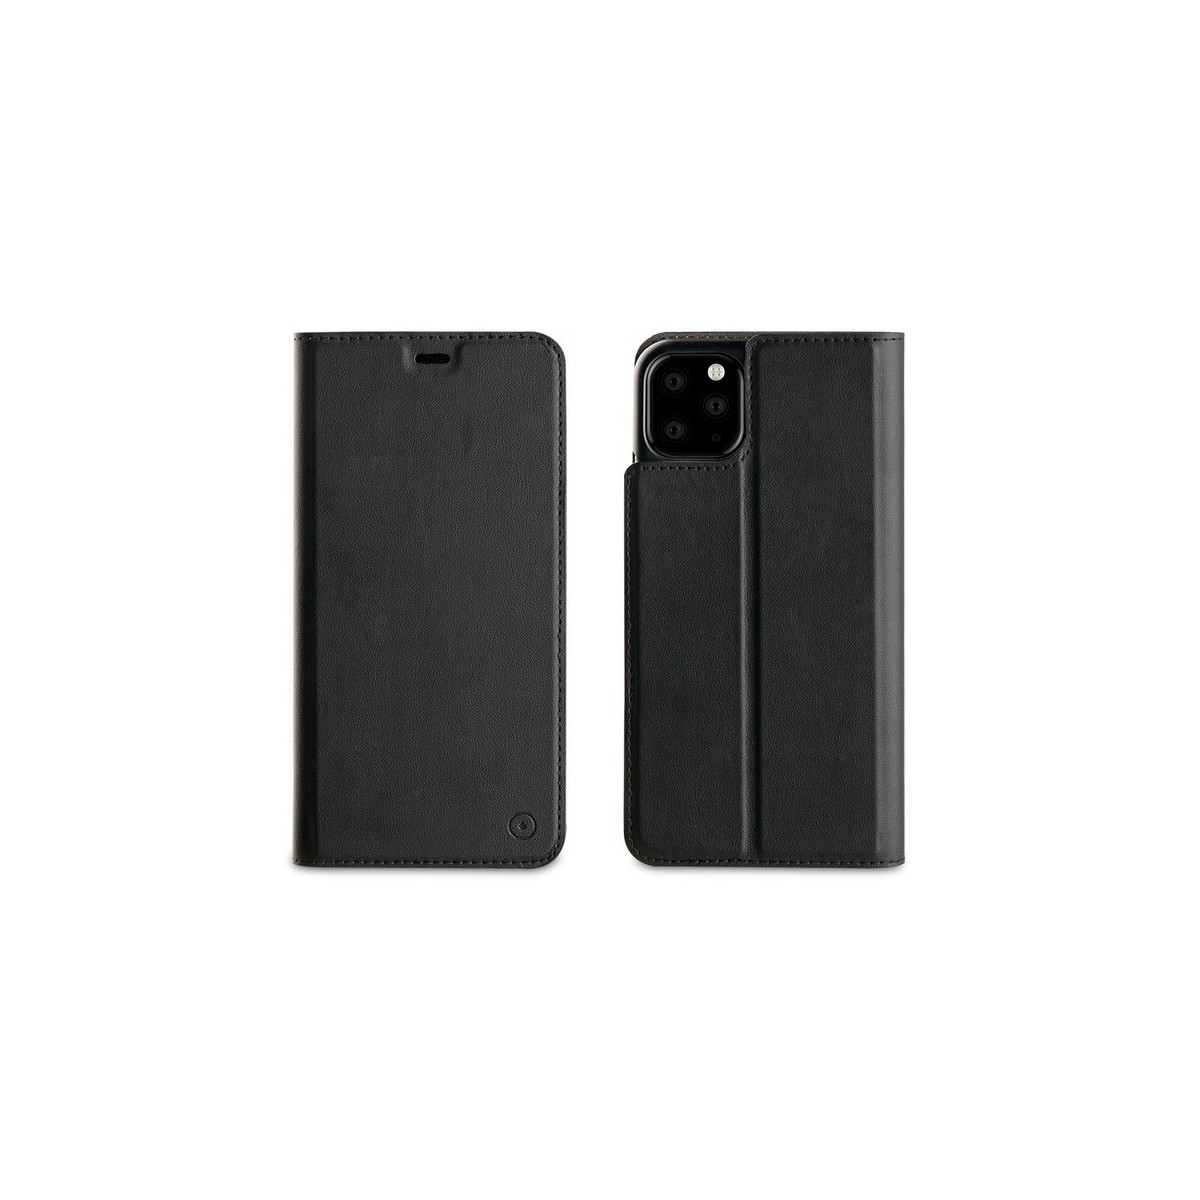 Etui compatible iPhone 11 Pro porte cartes Noir - Muvit